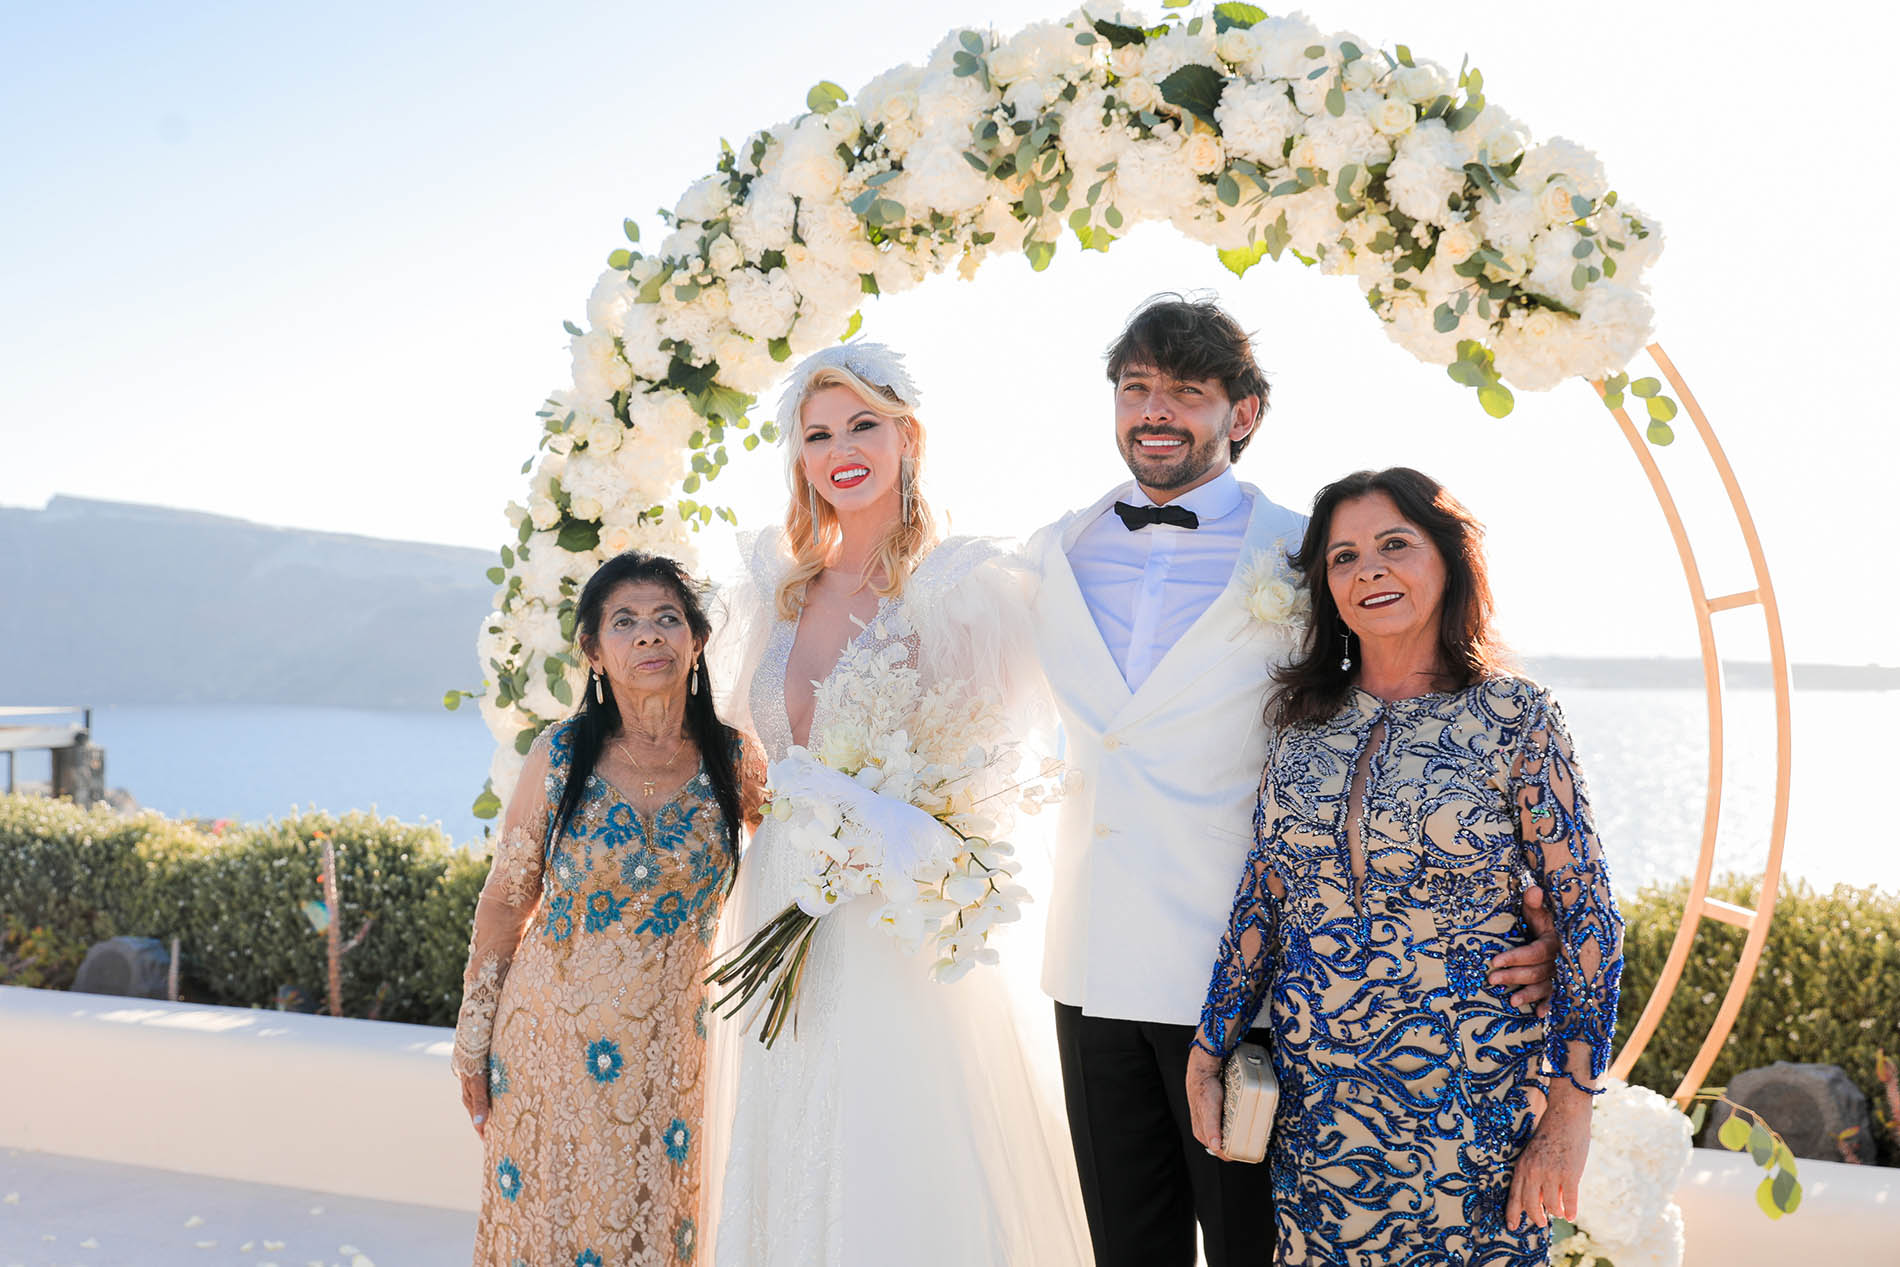 Val Marchiori and Thiago Castillo's wedding